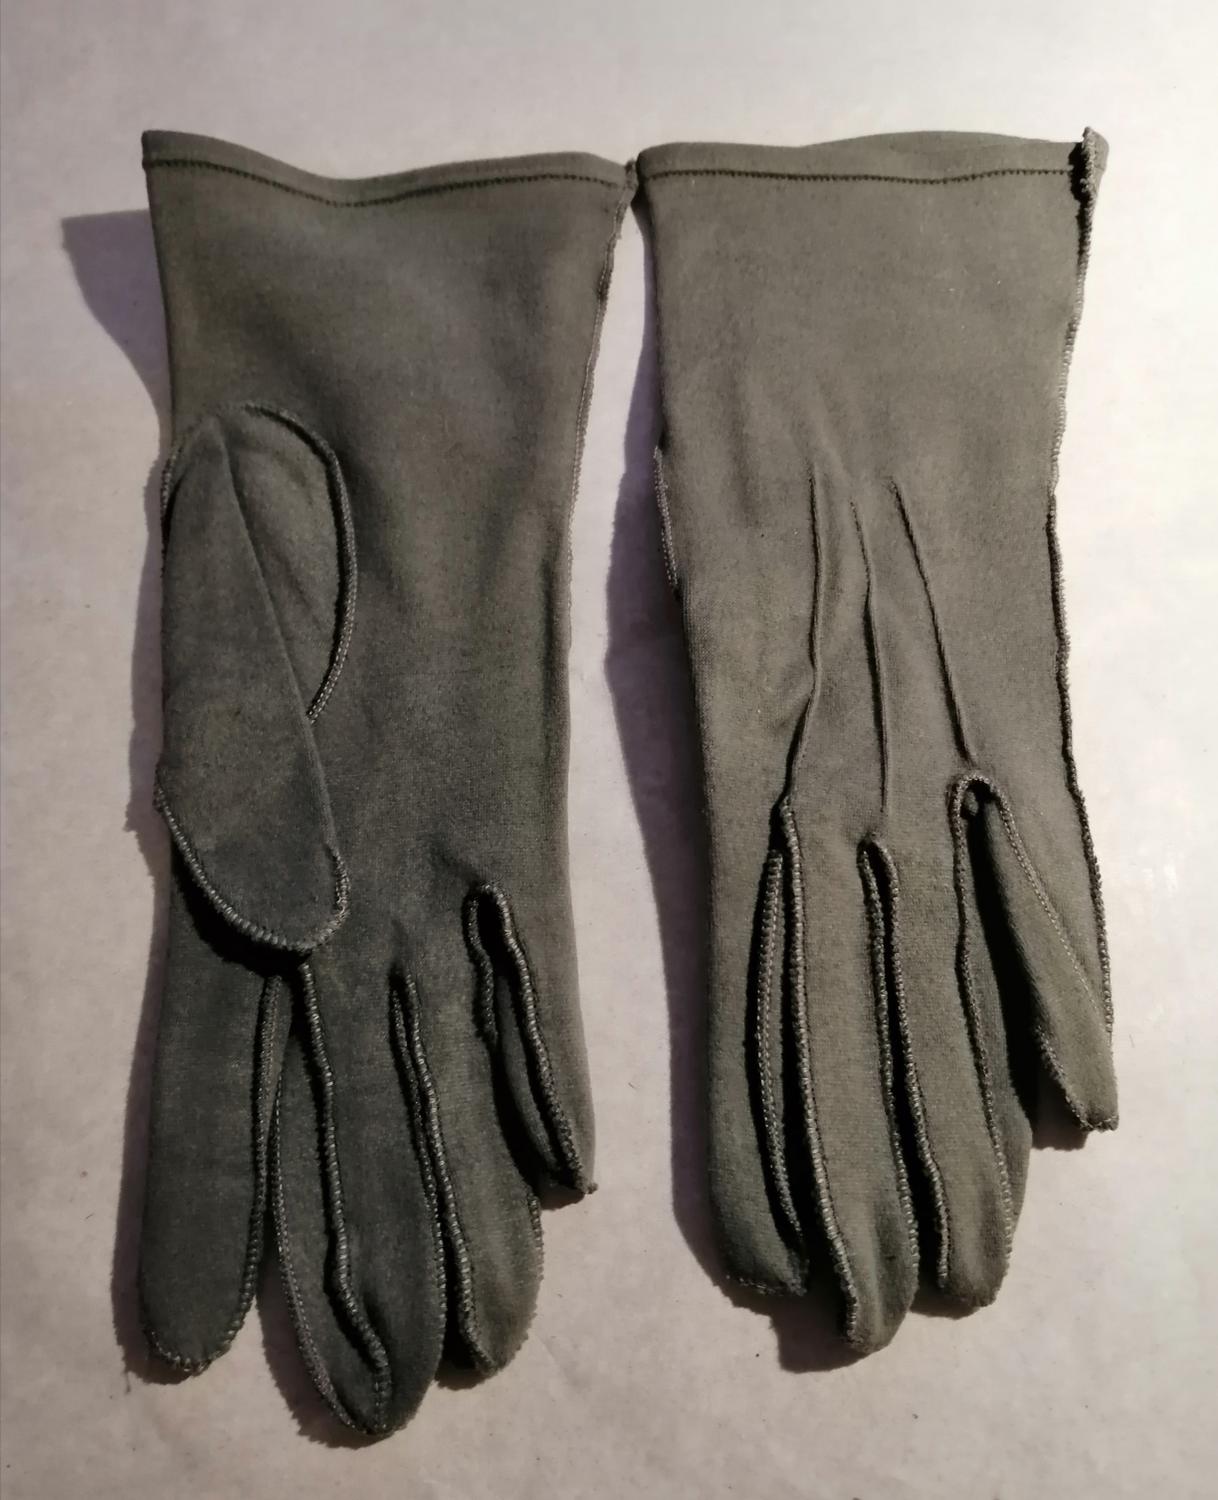 Vintage handskar khakigröna med stickningar mjuka mockaimitation stl 6,5